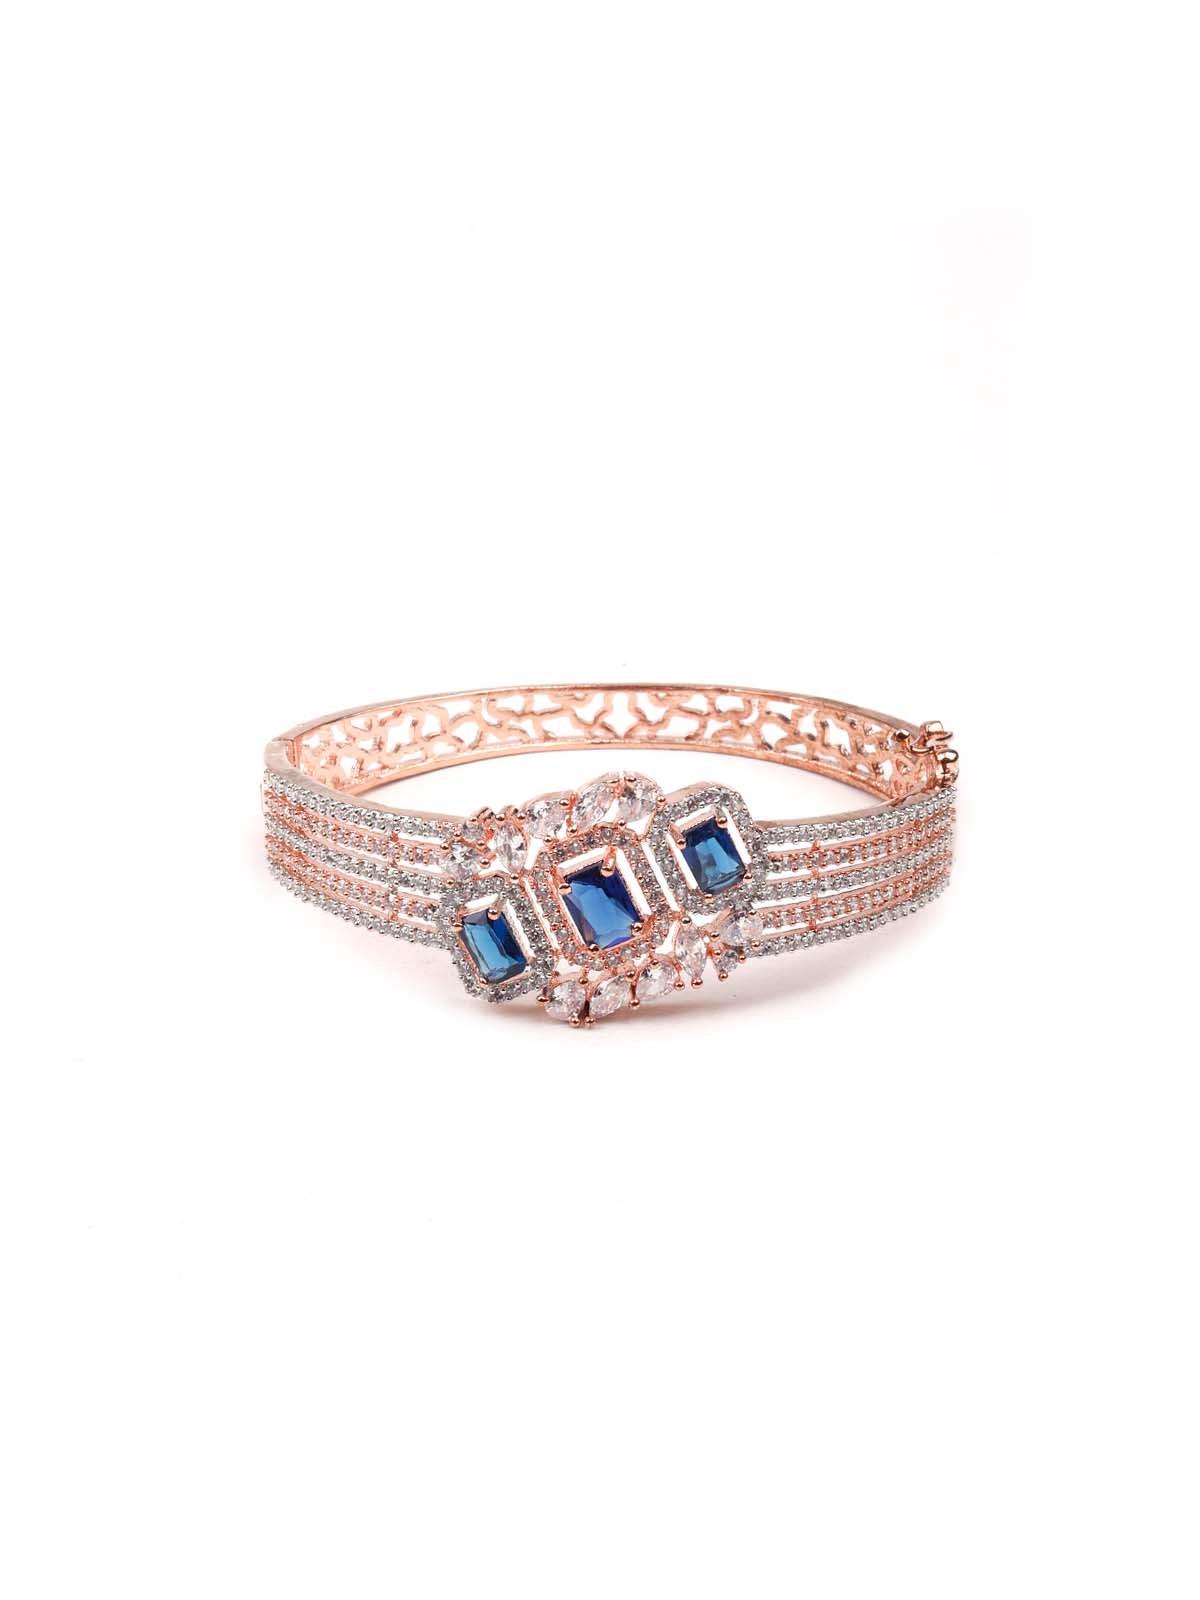 Stunning rose gold princess embellished bracelet - Odette